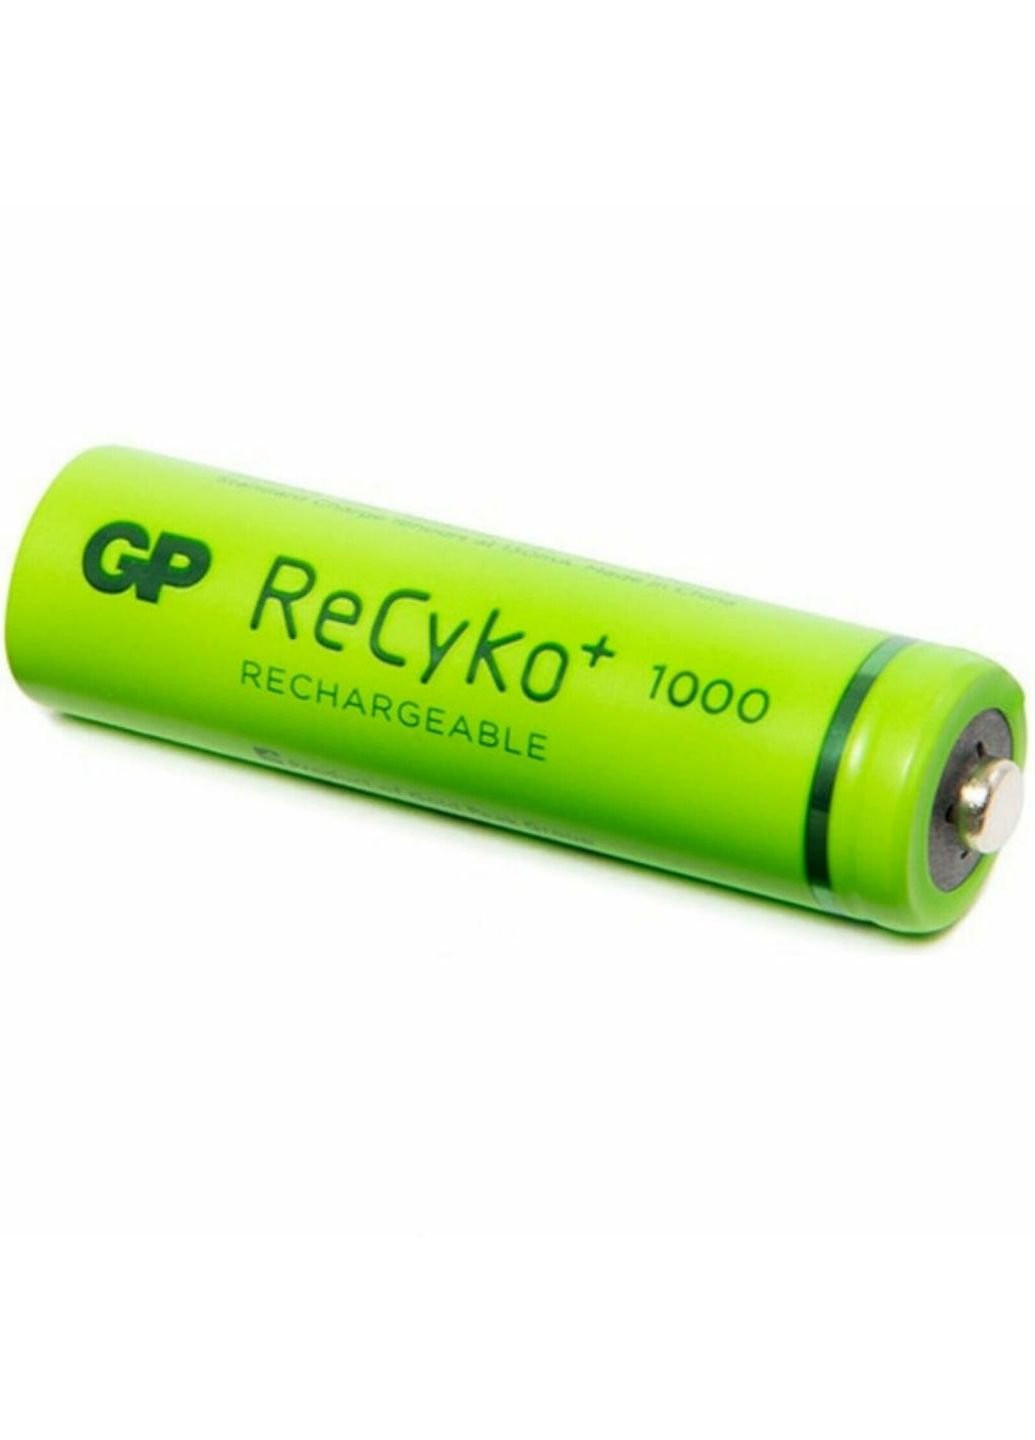 Аккумулятор AA 100AAHCE-2GB4 ReCyko+ Smart Energy 1000 mAh * 4 (NiMn) (100AAHCE / 4891199145452) GP (251419855)